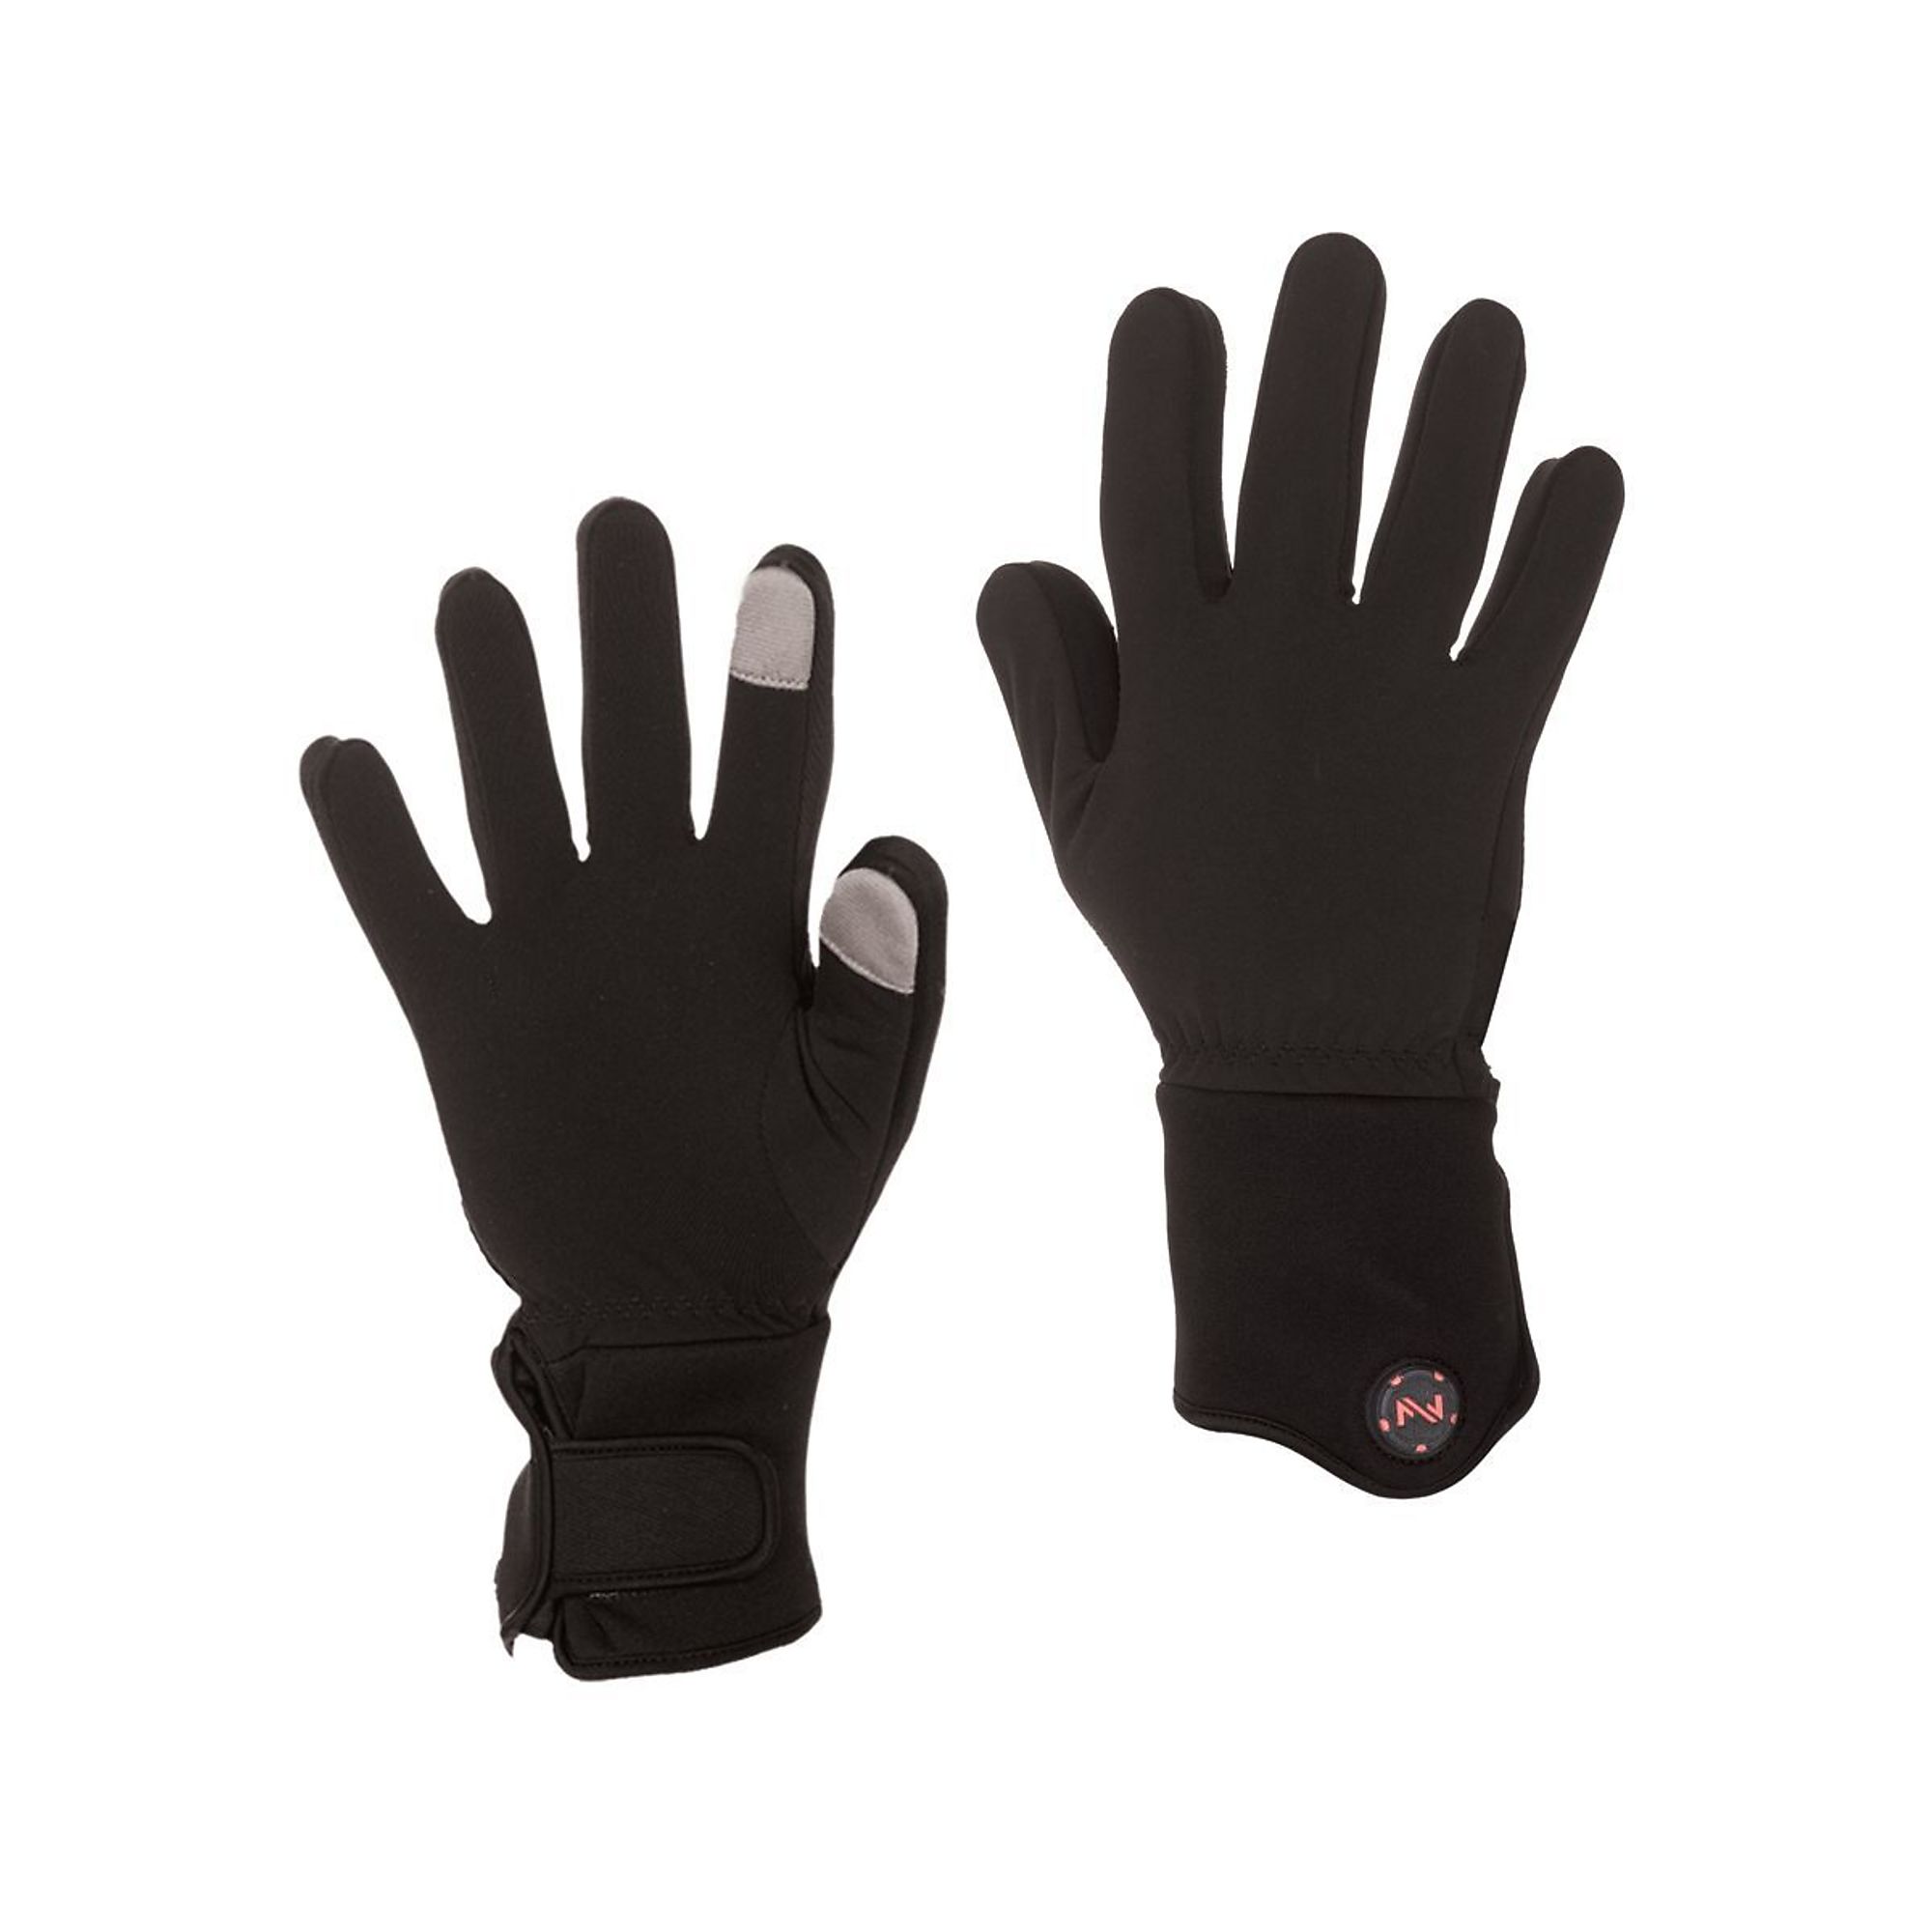 Fieldsheer, Glove Liner | Unisex | 7.4V | BLK | 2X, Size 2XL, Color Black, Included (qty.) 2 Model MWUG06010620 -  MOBILE WARMING